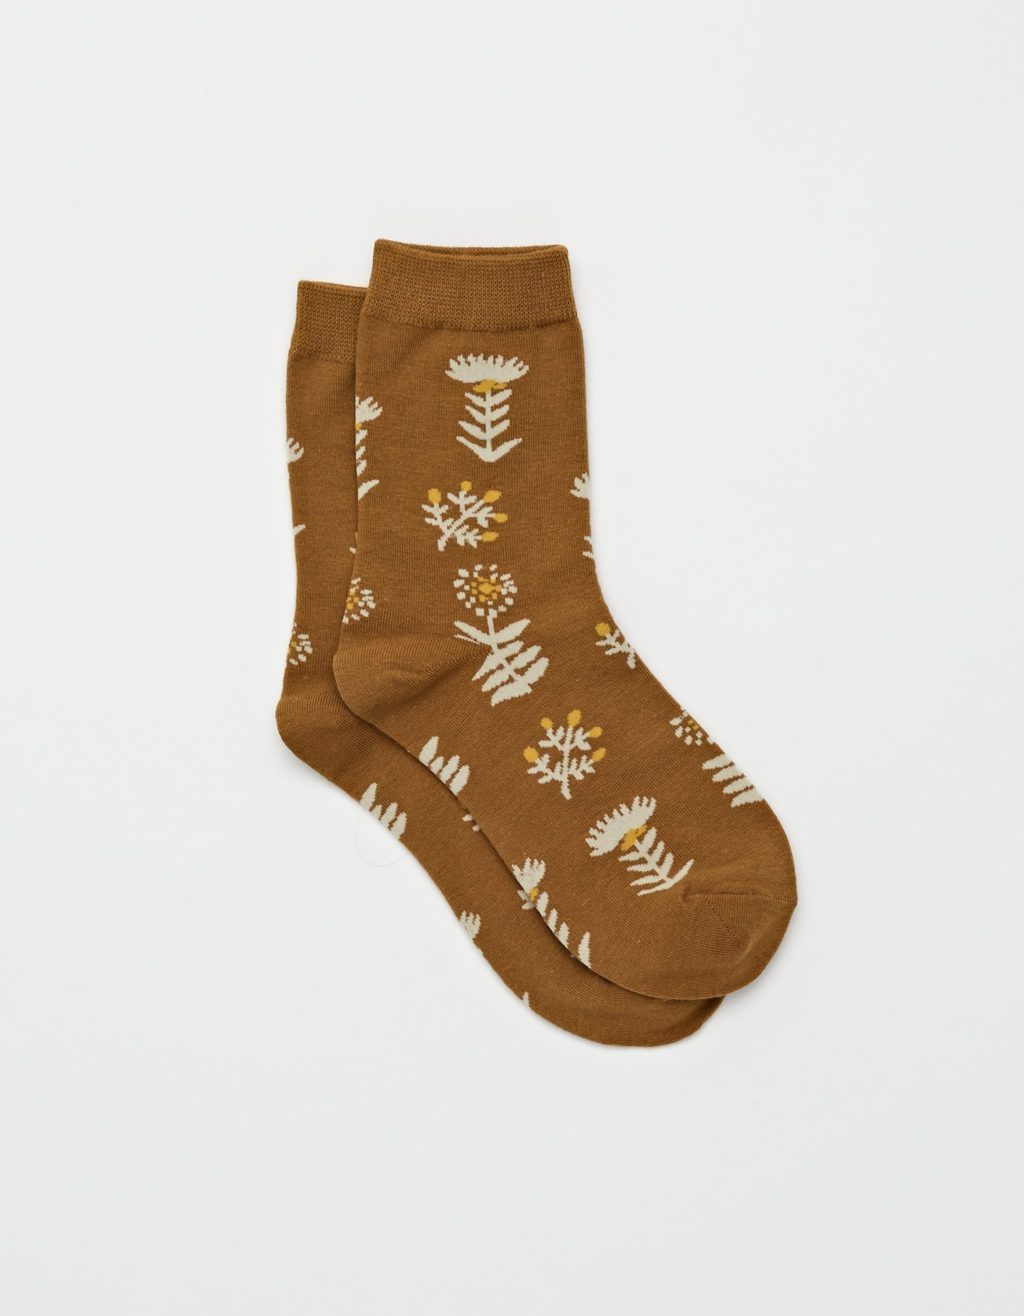 Stella + Gemma Socks Mustard/Wildflowers